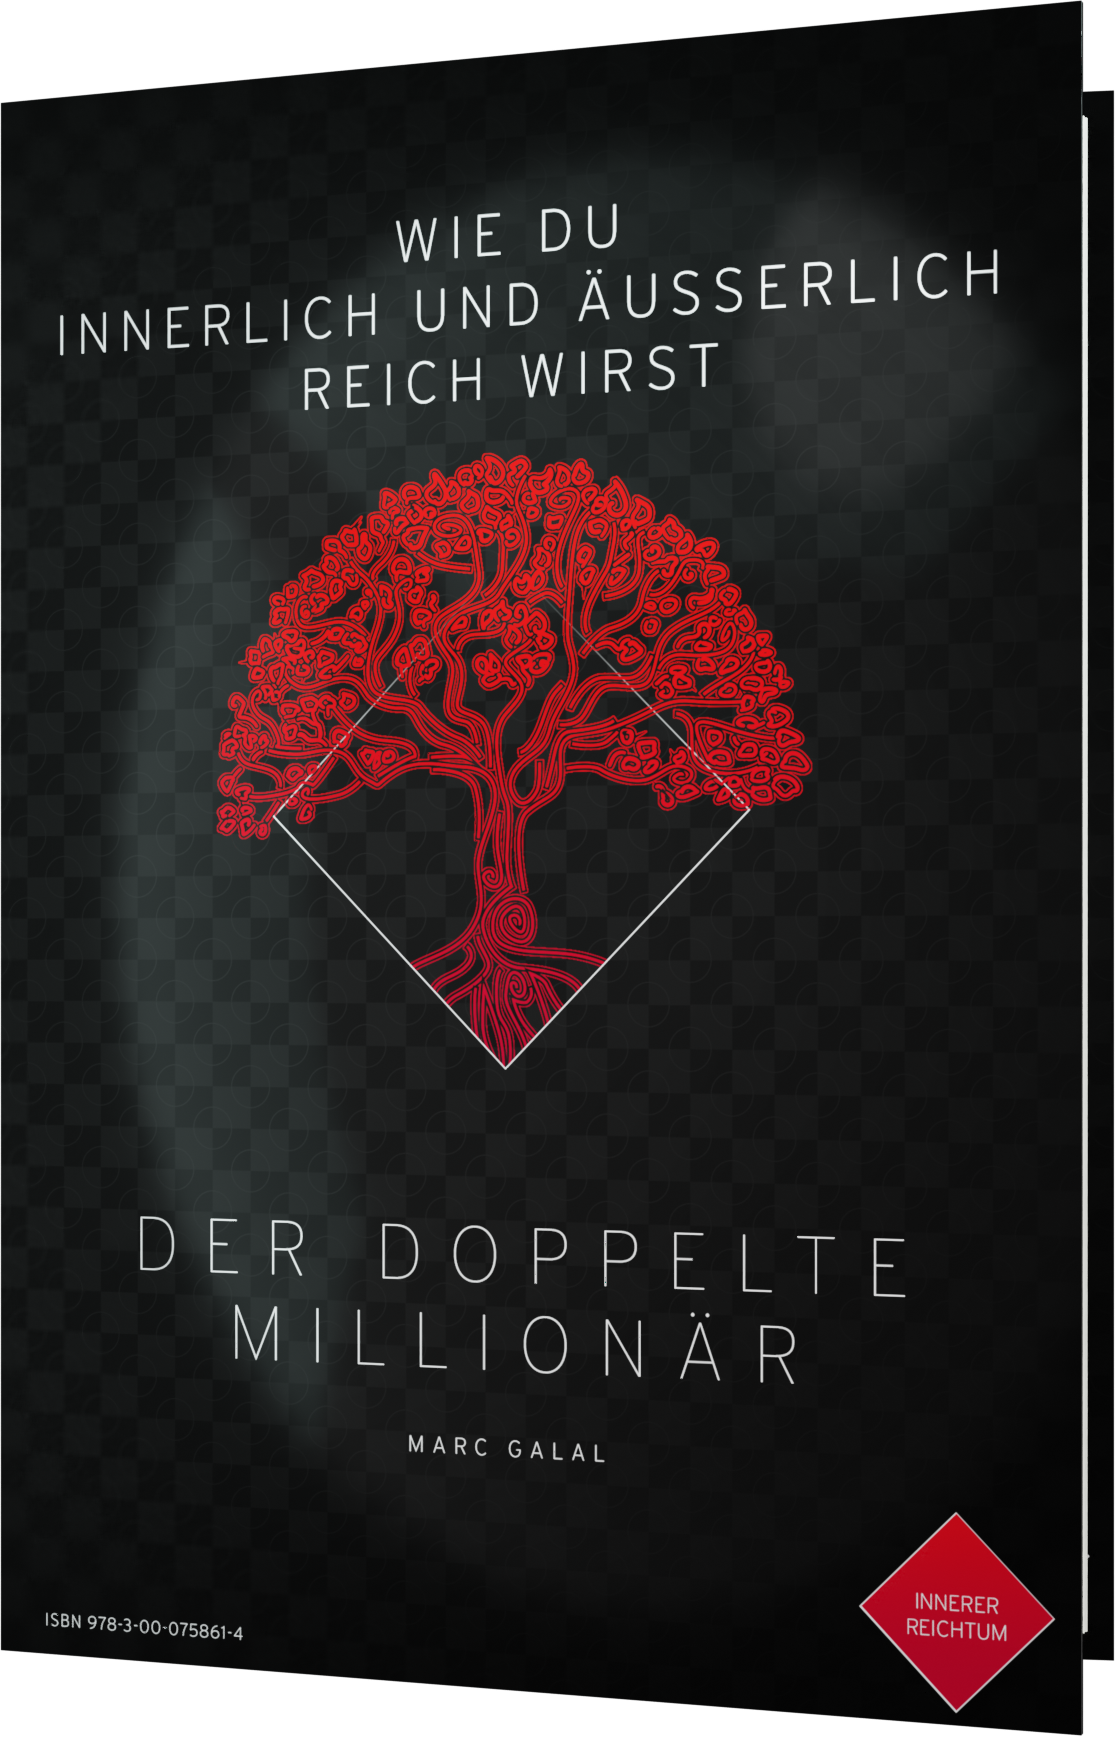 Buch "Der doppelte Millionär"